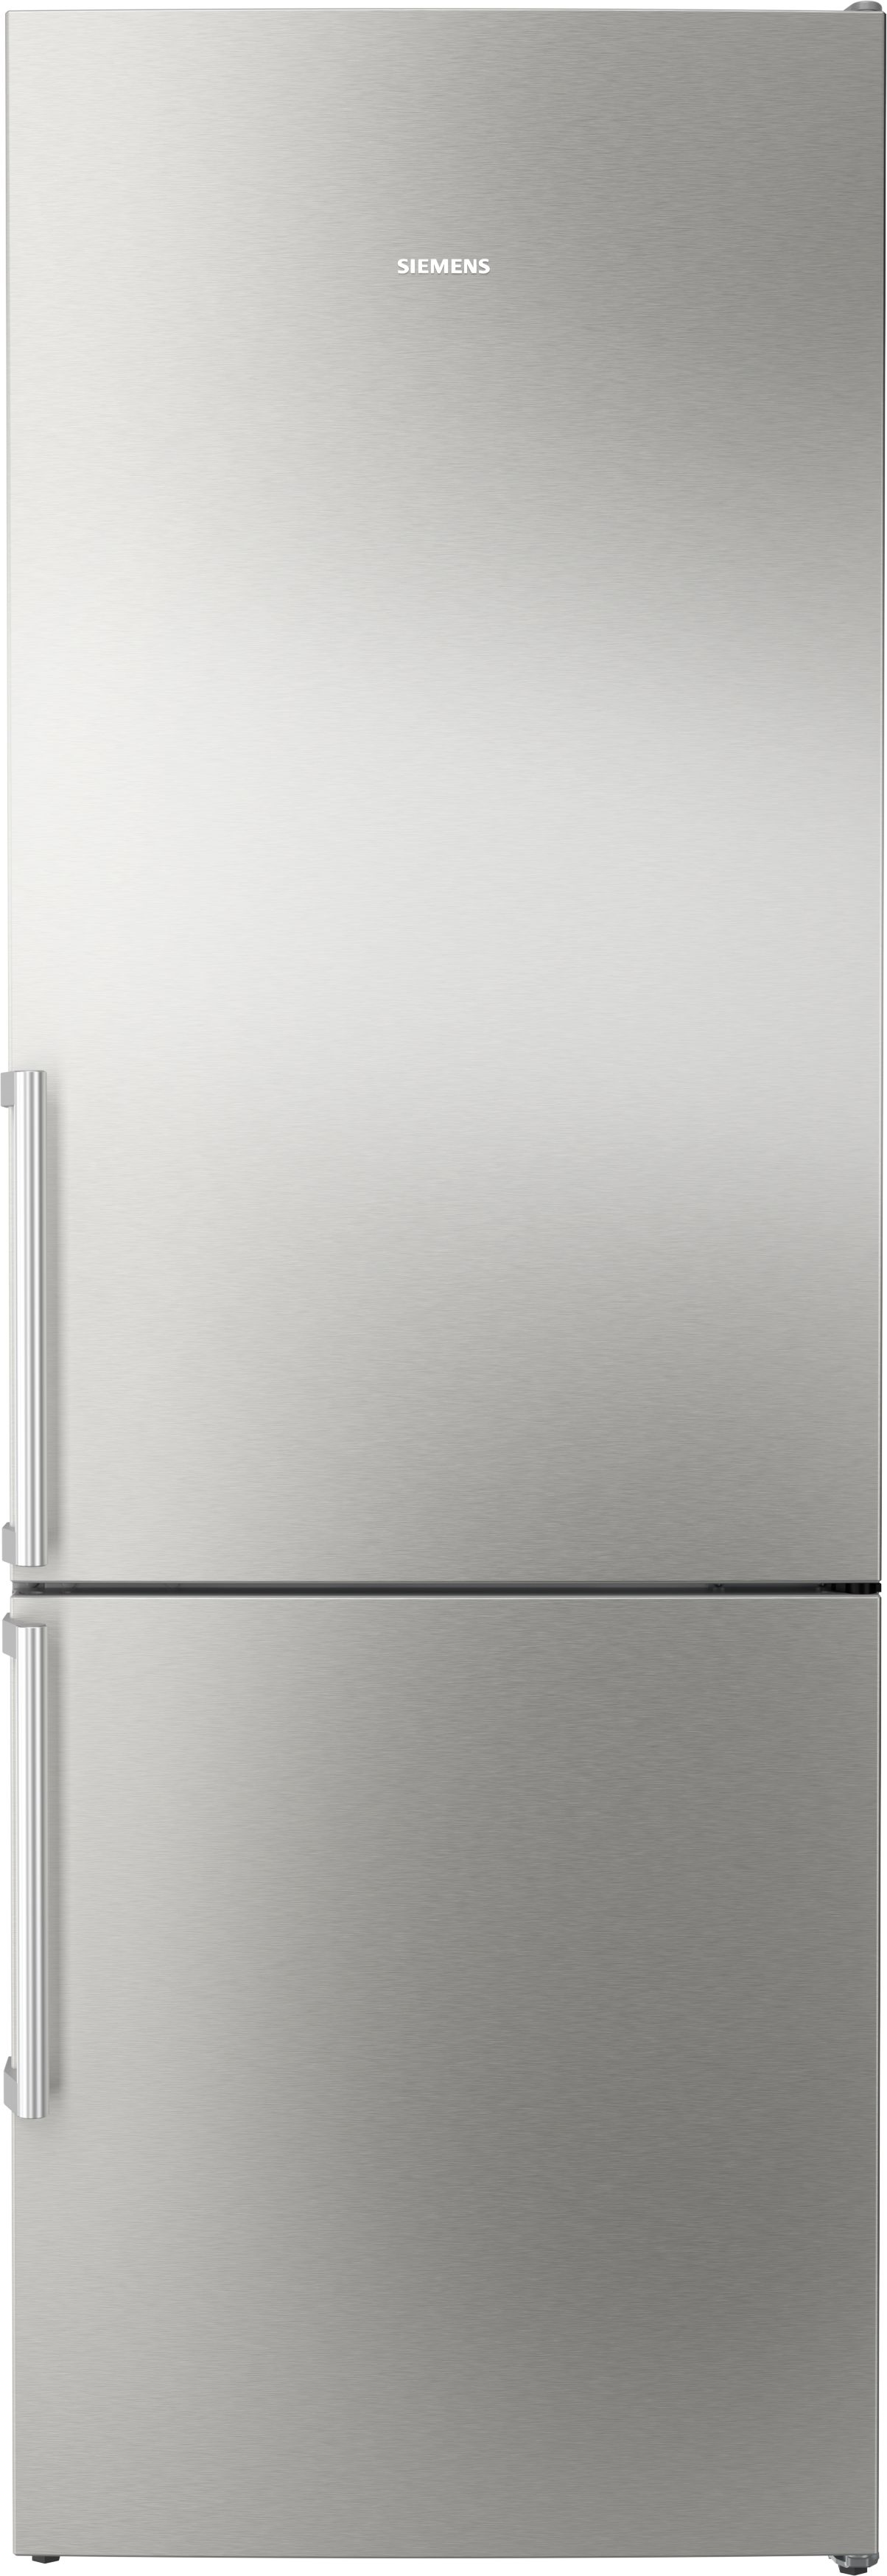 Siemens KG49NEICU topTeam Freistehende Kühl-Gefrier-Kombination  mit Gefrierbereich,203 x 70 cm ,Inox-Silber,NoFrost